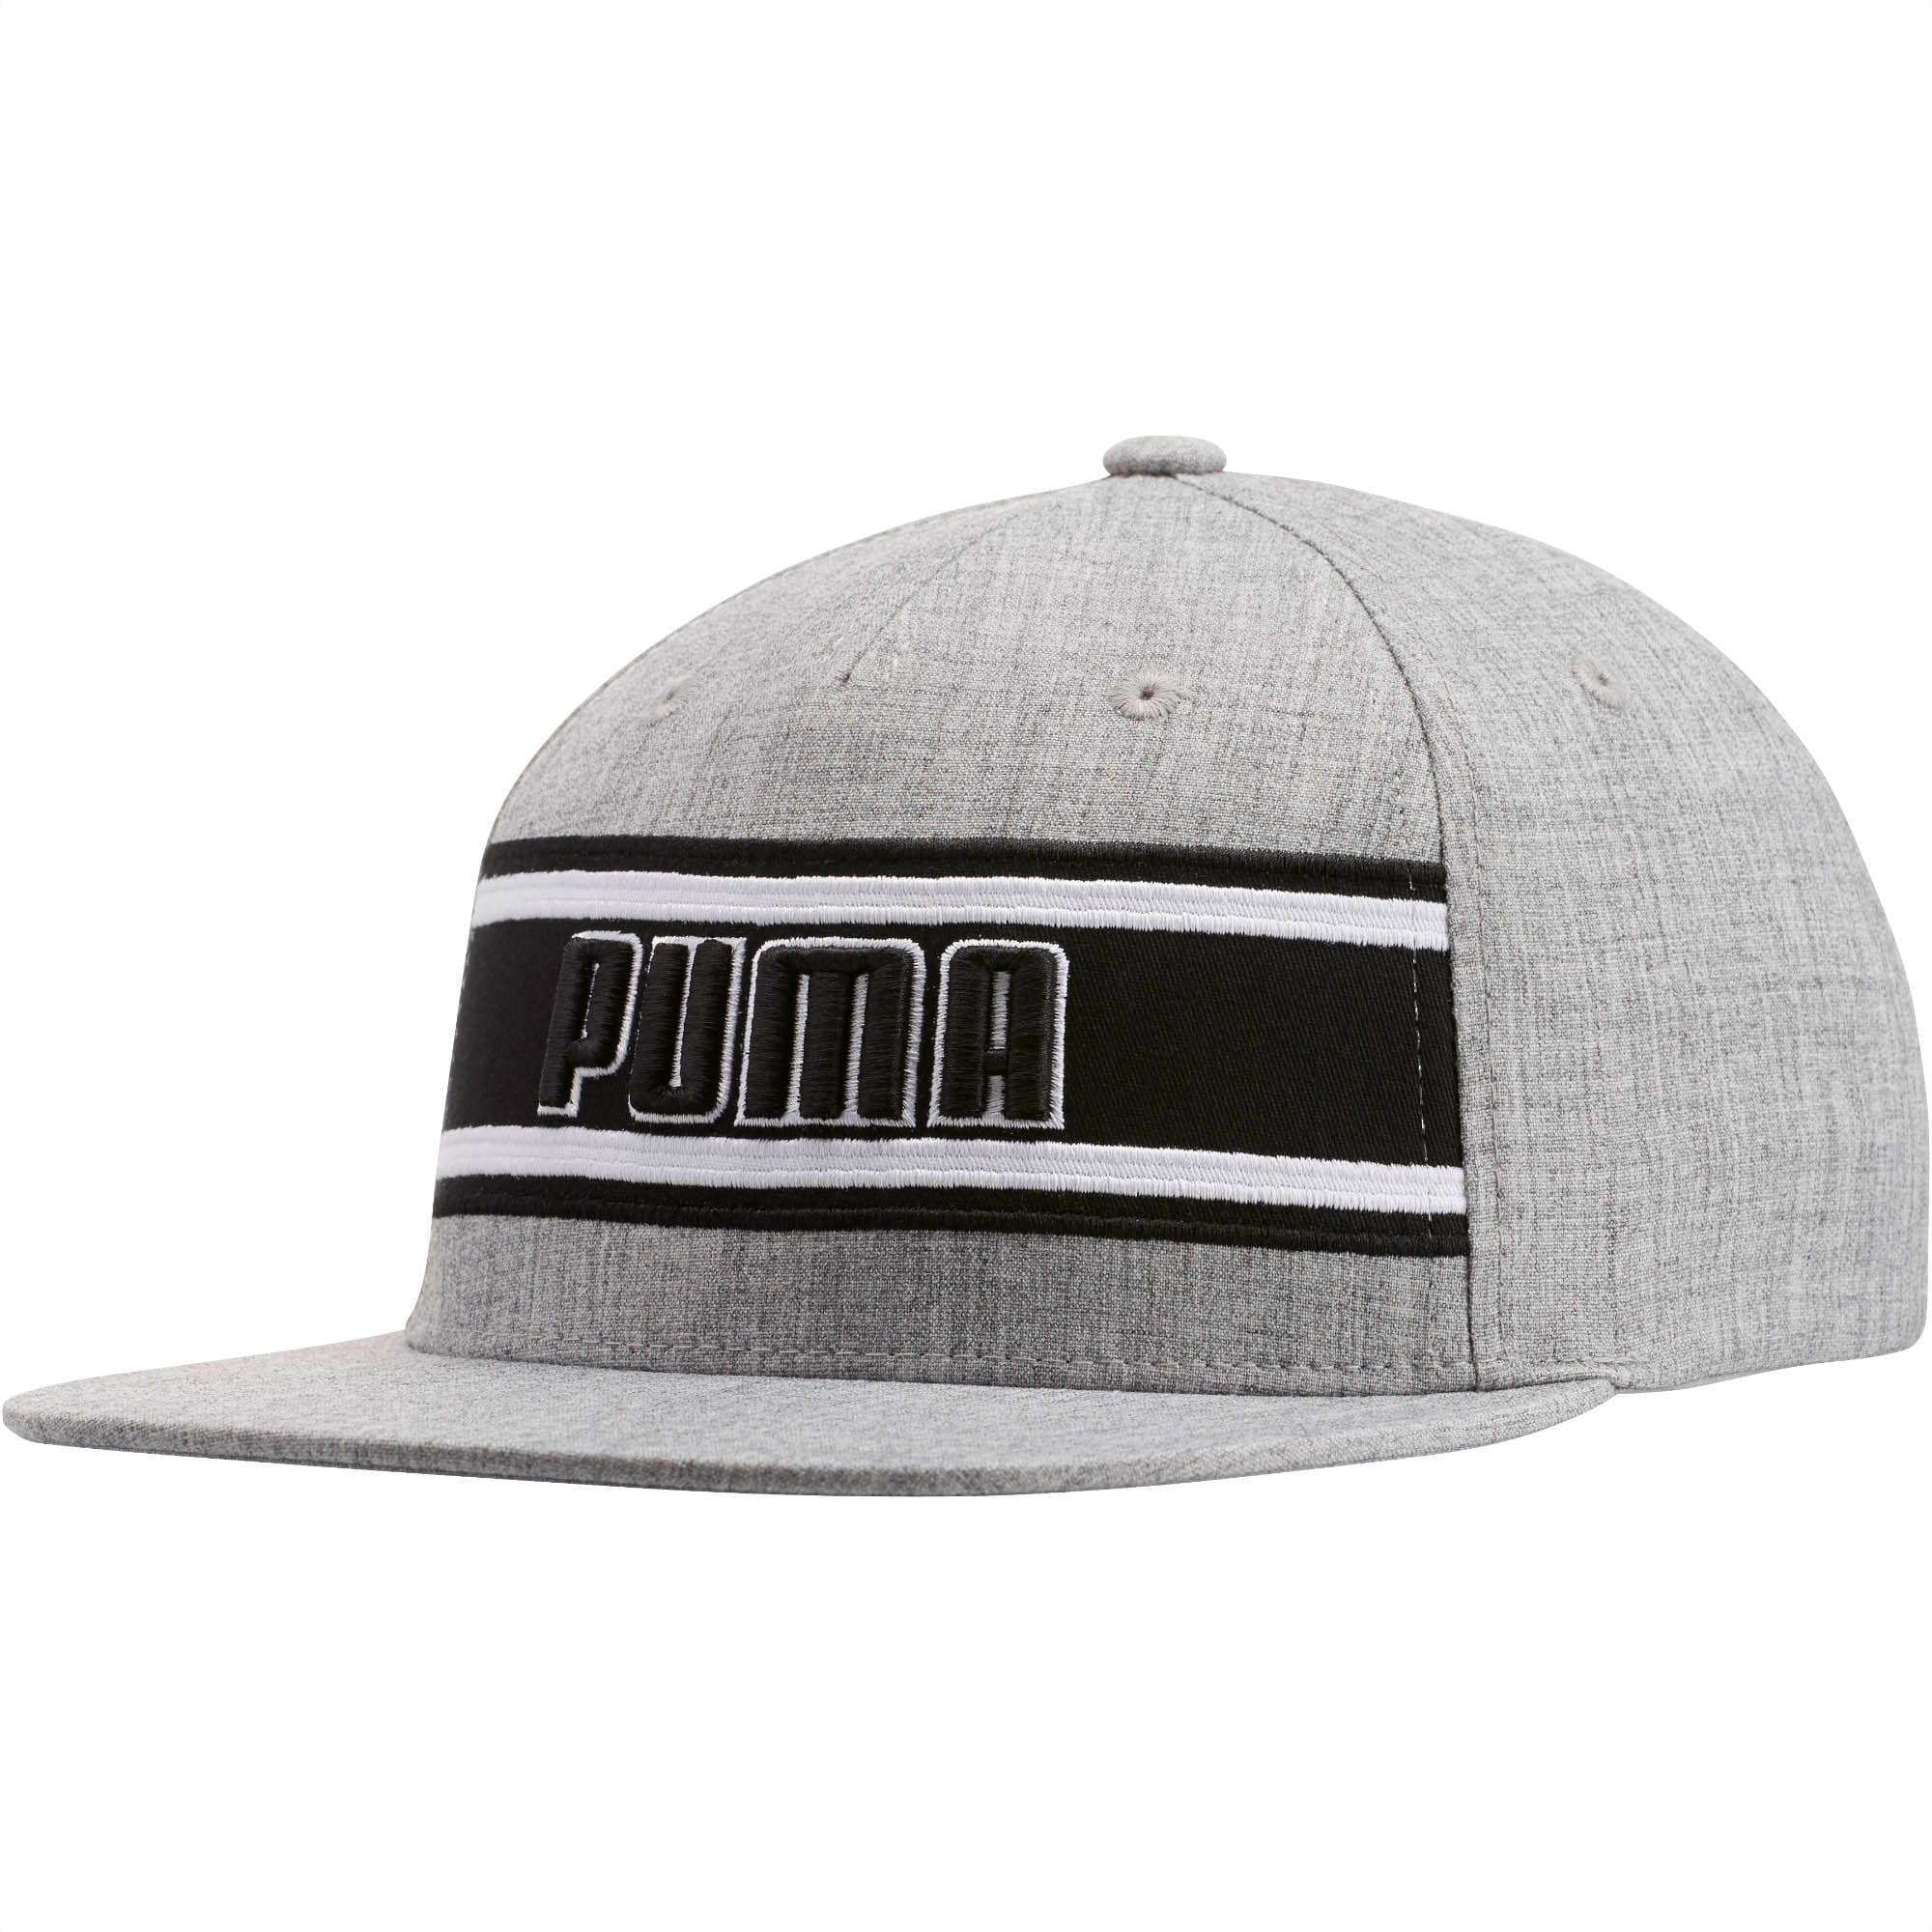 puma flat bill hat